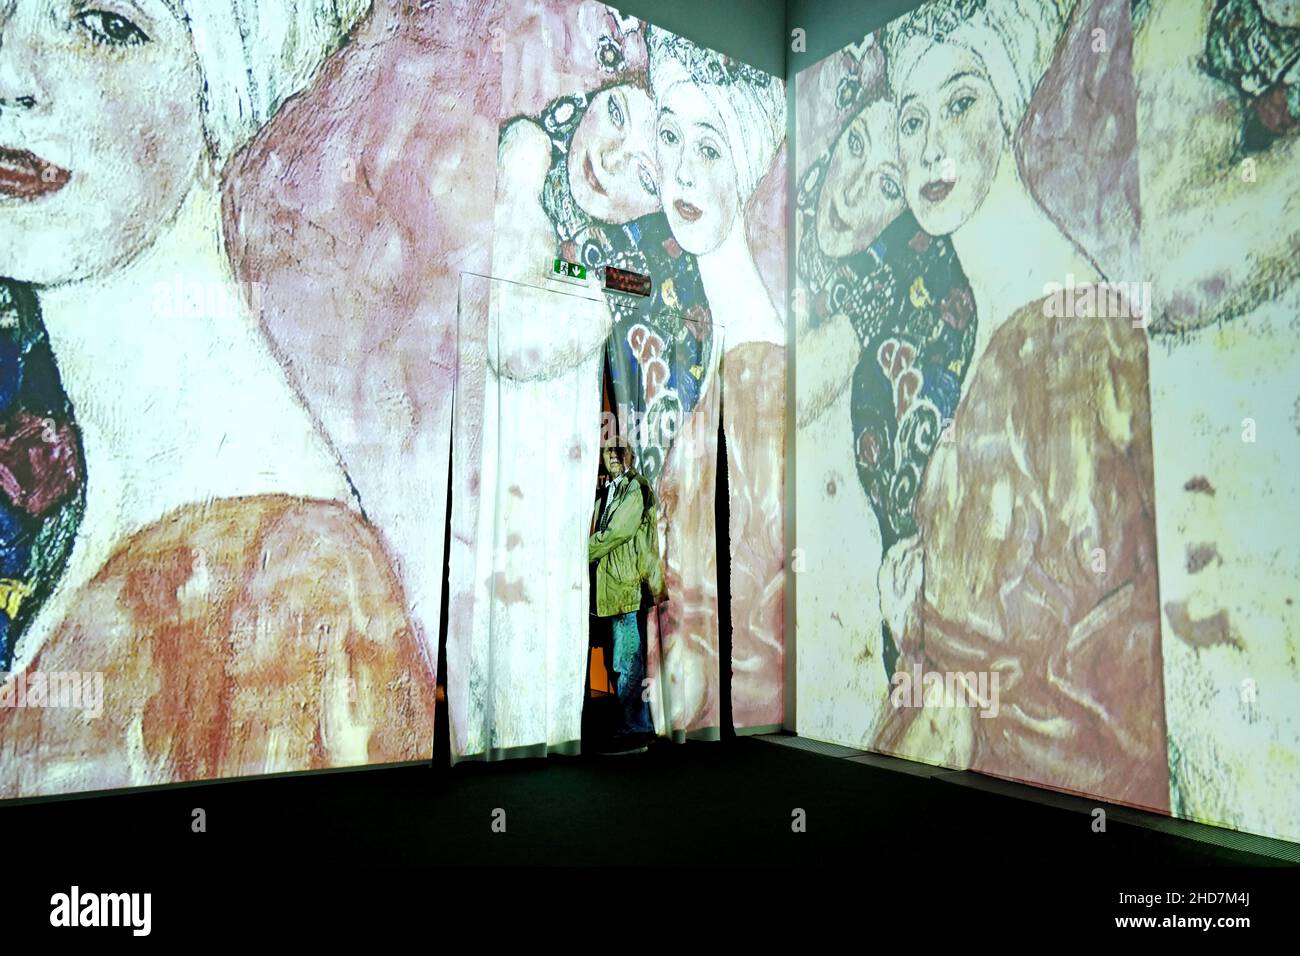 Klimt Experience, multimediale Kunstausstellung des berühmten österreichischen Malers, in Mailand. Stockfoto